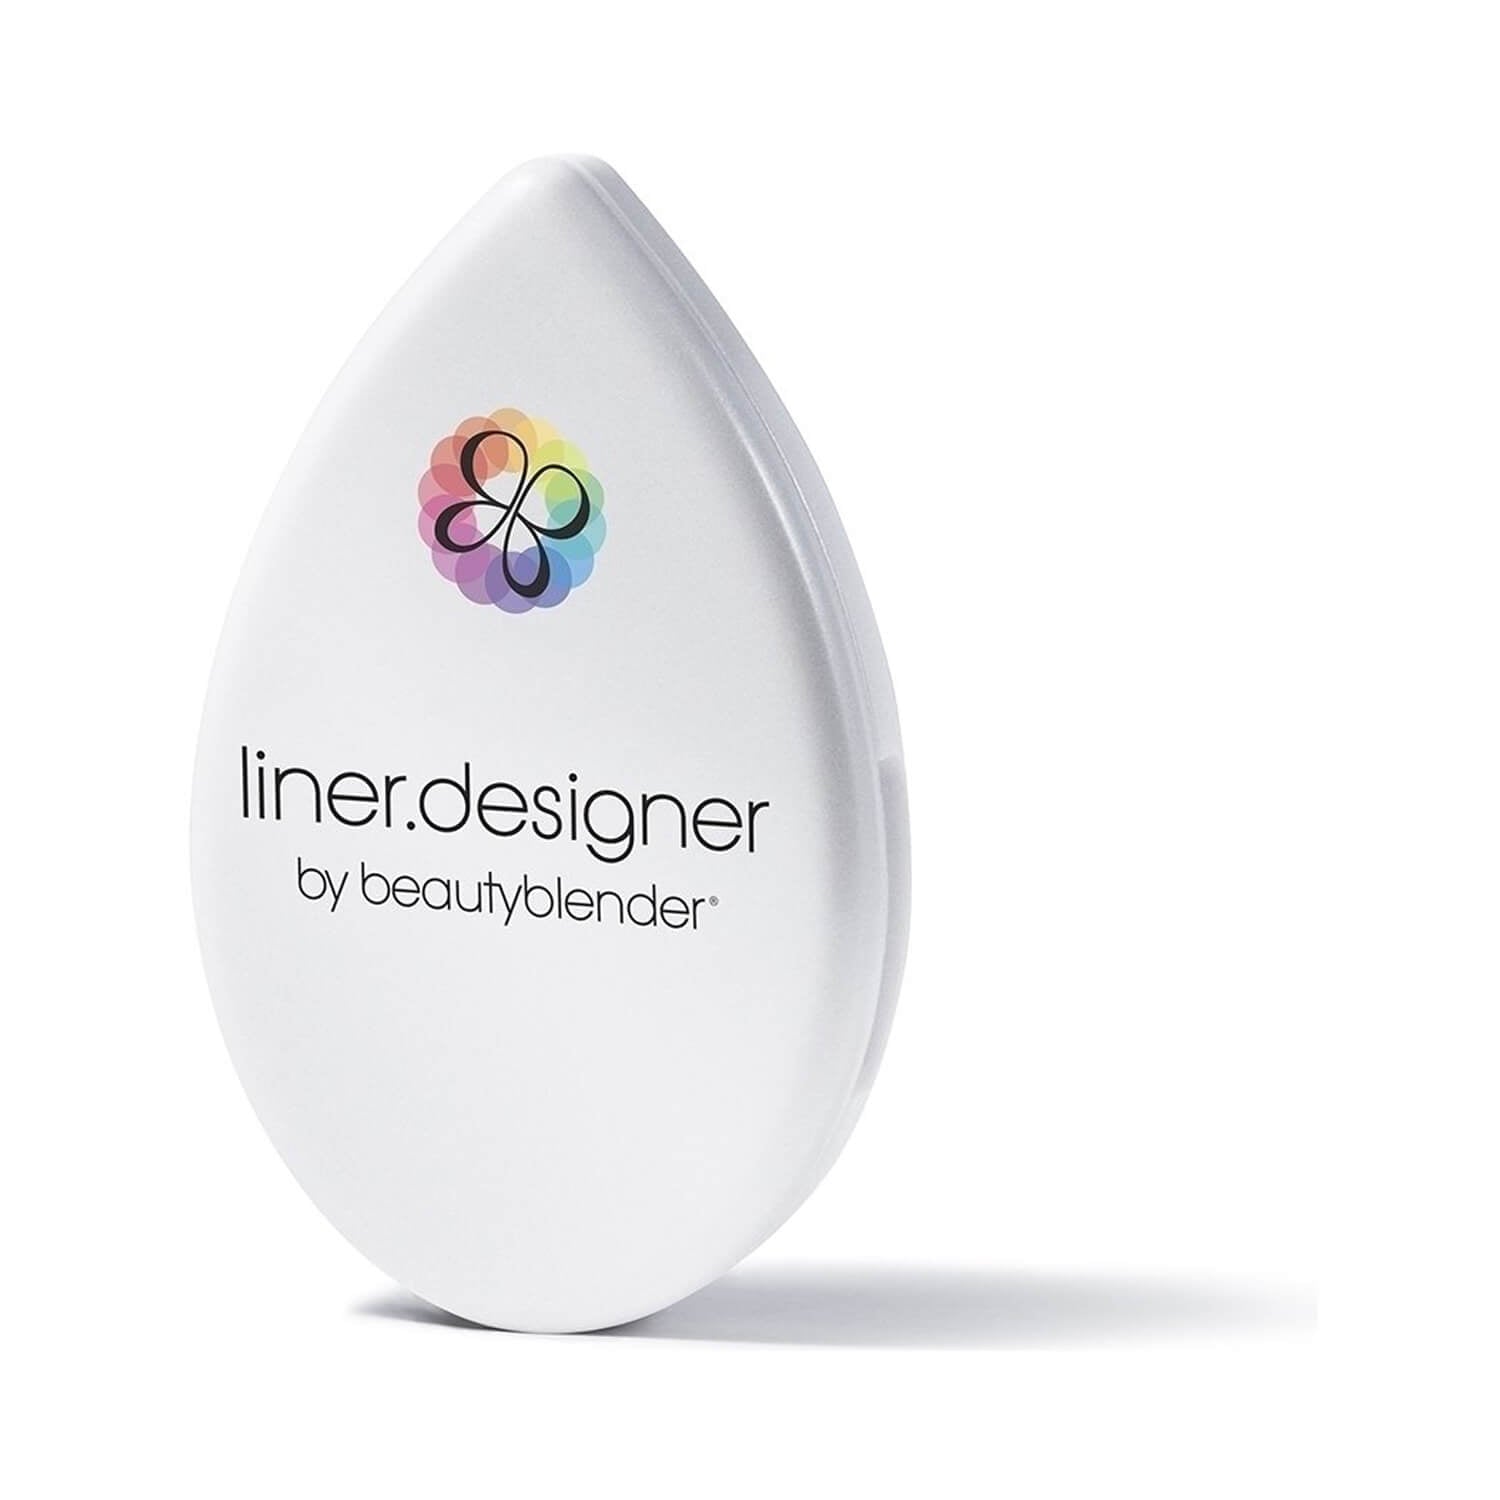 Beautyblender Liner.Designer Solo